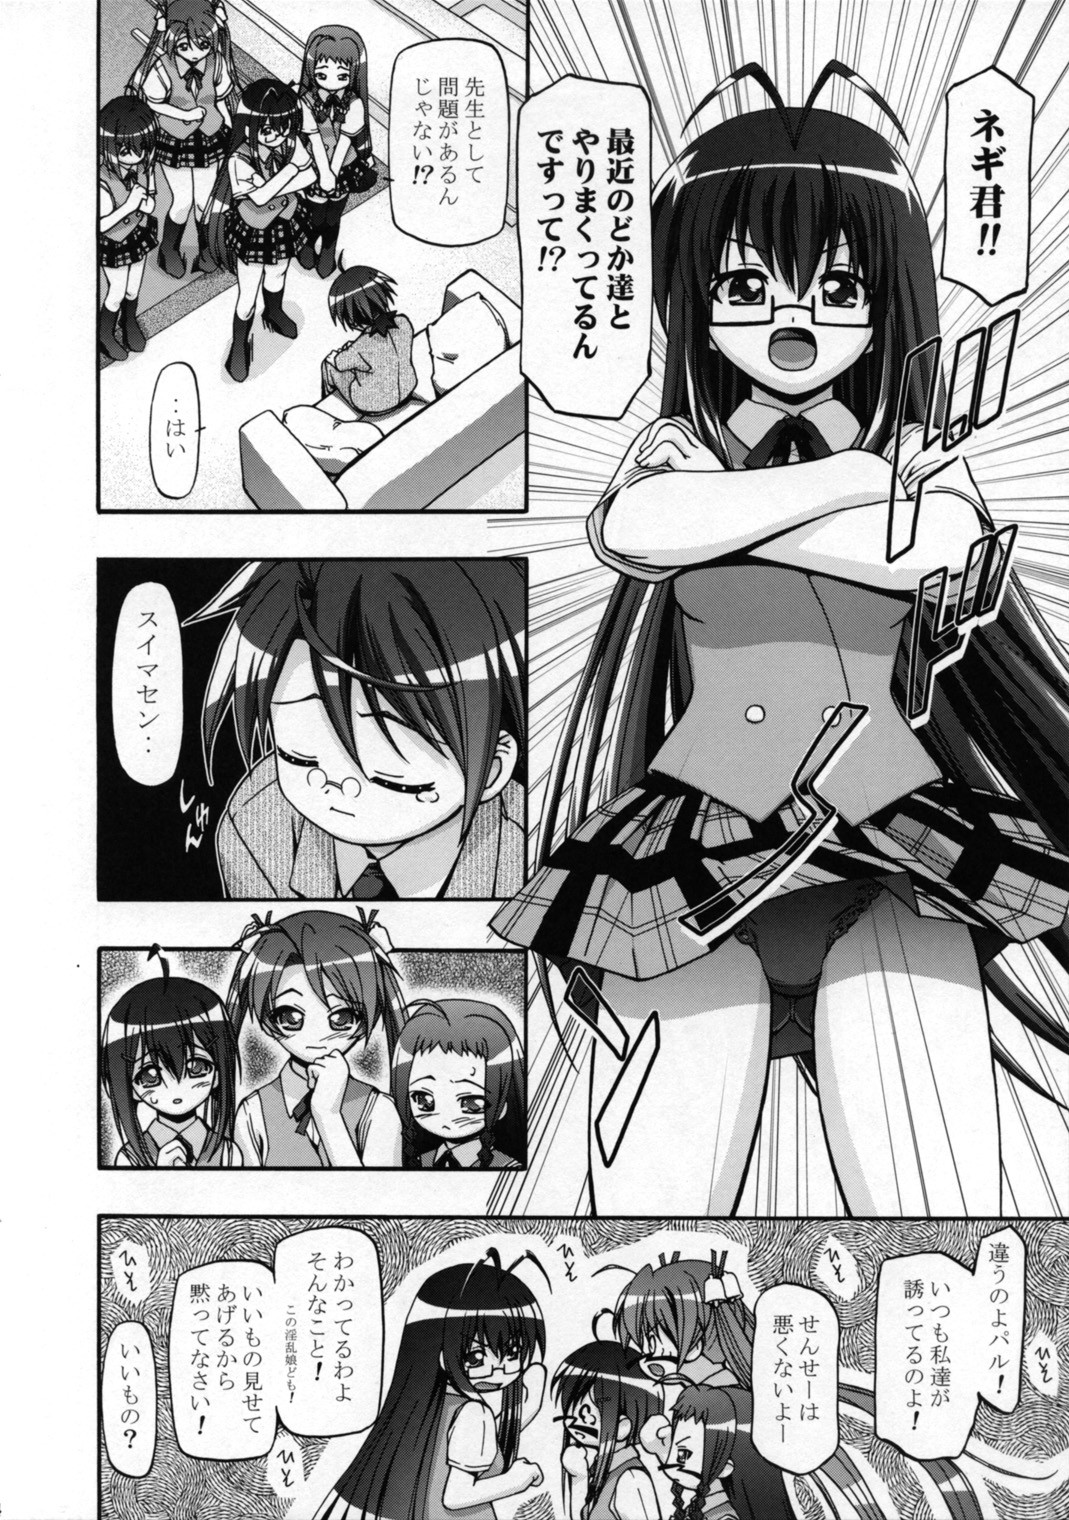 (SC36) [Gambler Club (Kousaka Jun)] Mahora Gakuen TyuuToubo 3-A 2 Jikanme (Mahou Sensei Negima!) [Decensored] page 3 full